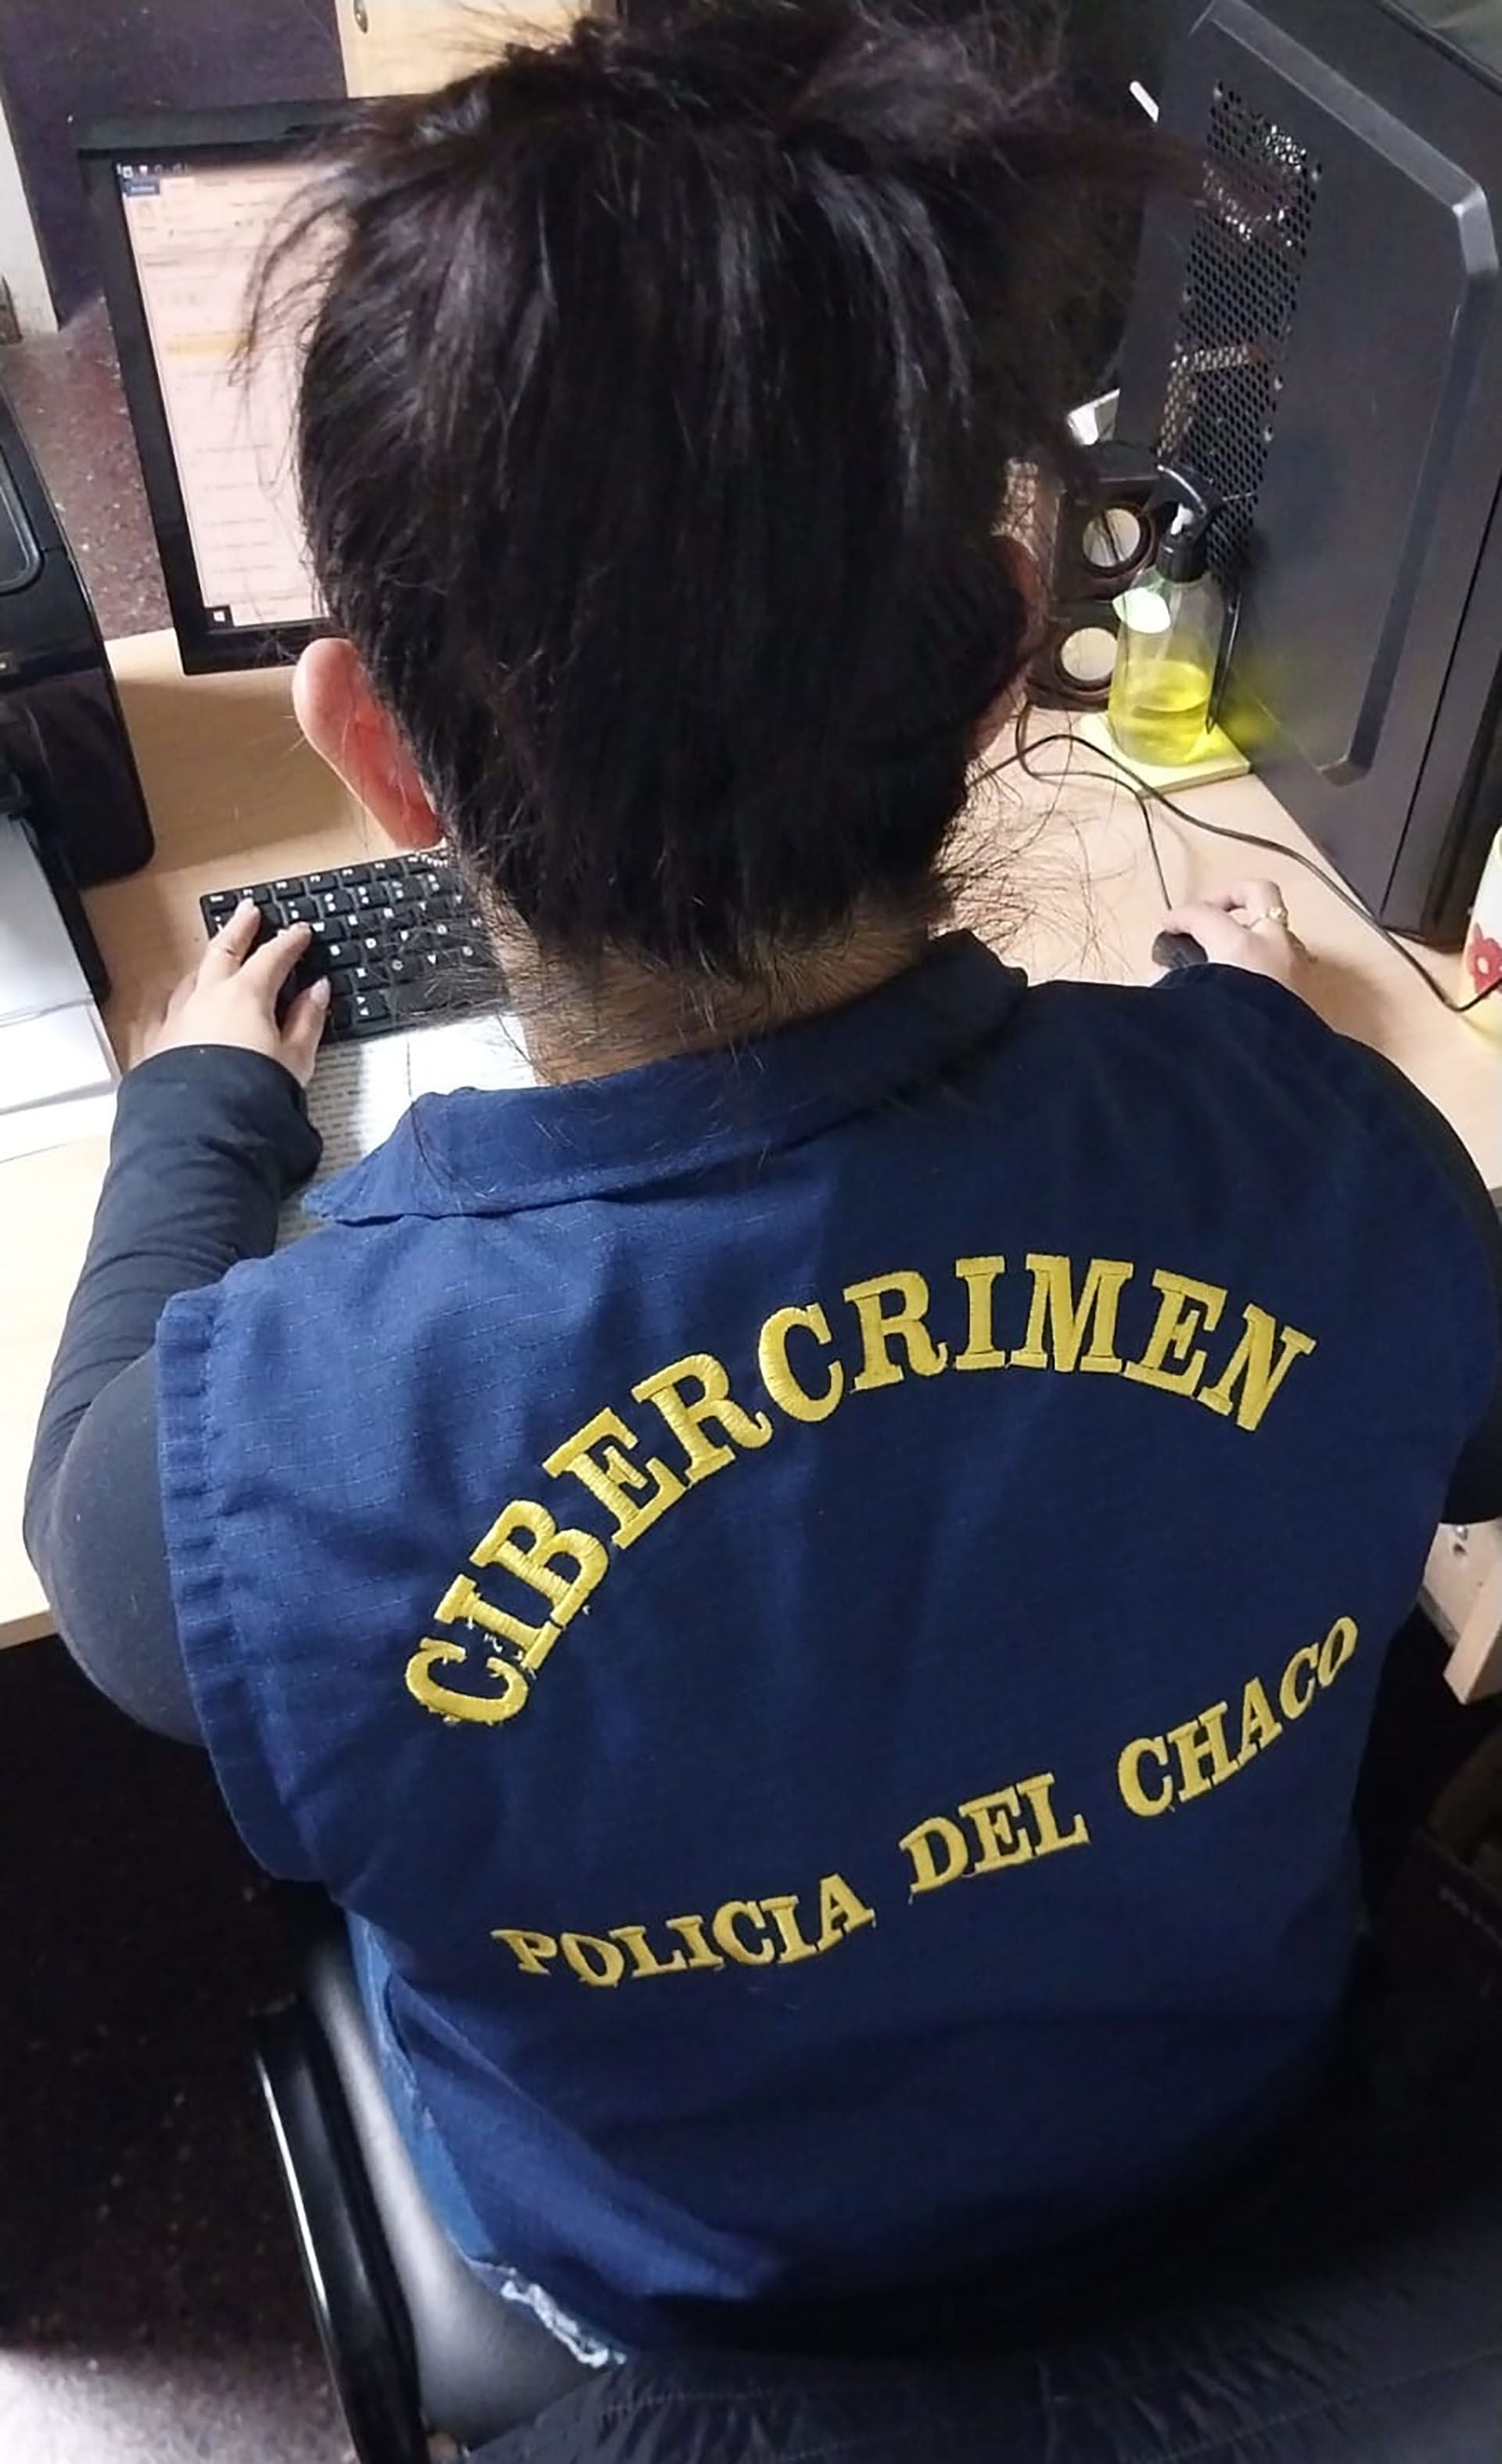 El acusado había denunciado el robo de su teléfono un día antes de ser arrestado (Policía del Chaco)